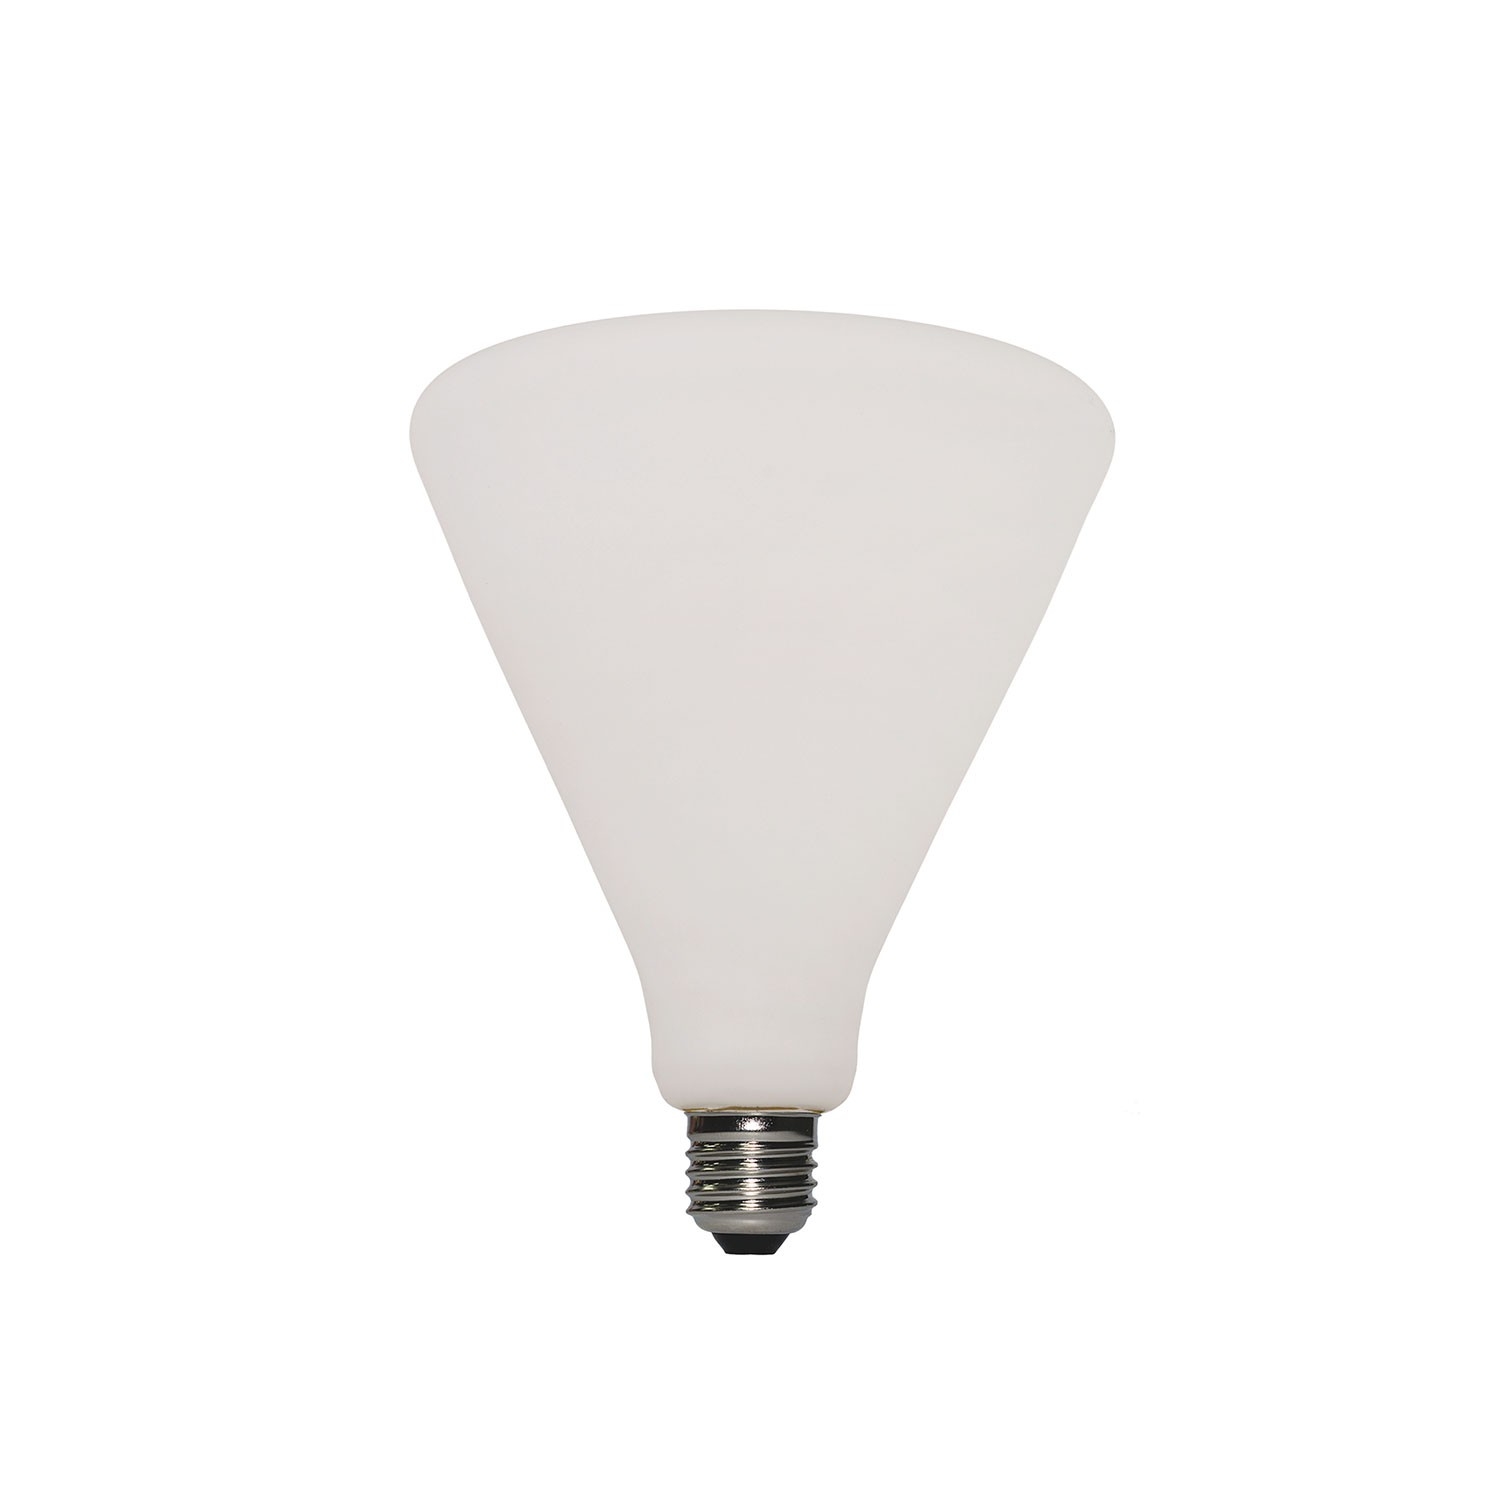 LED Porcelain Light Bulb Siro 6W E27 Dimmable 2700K